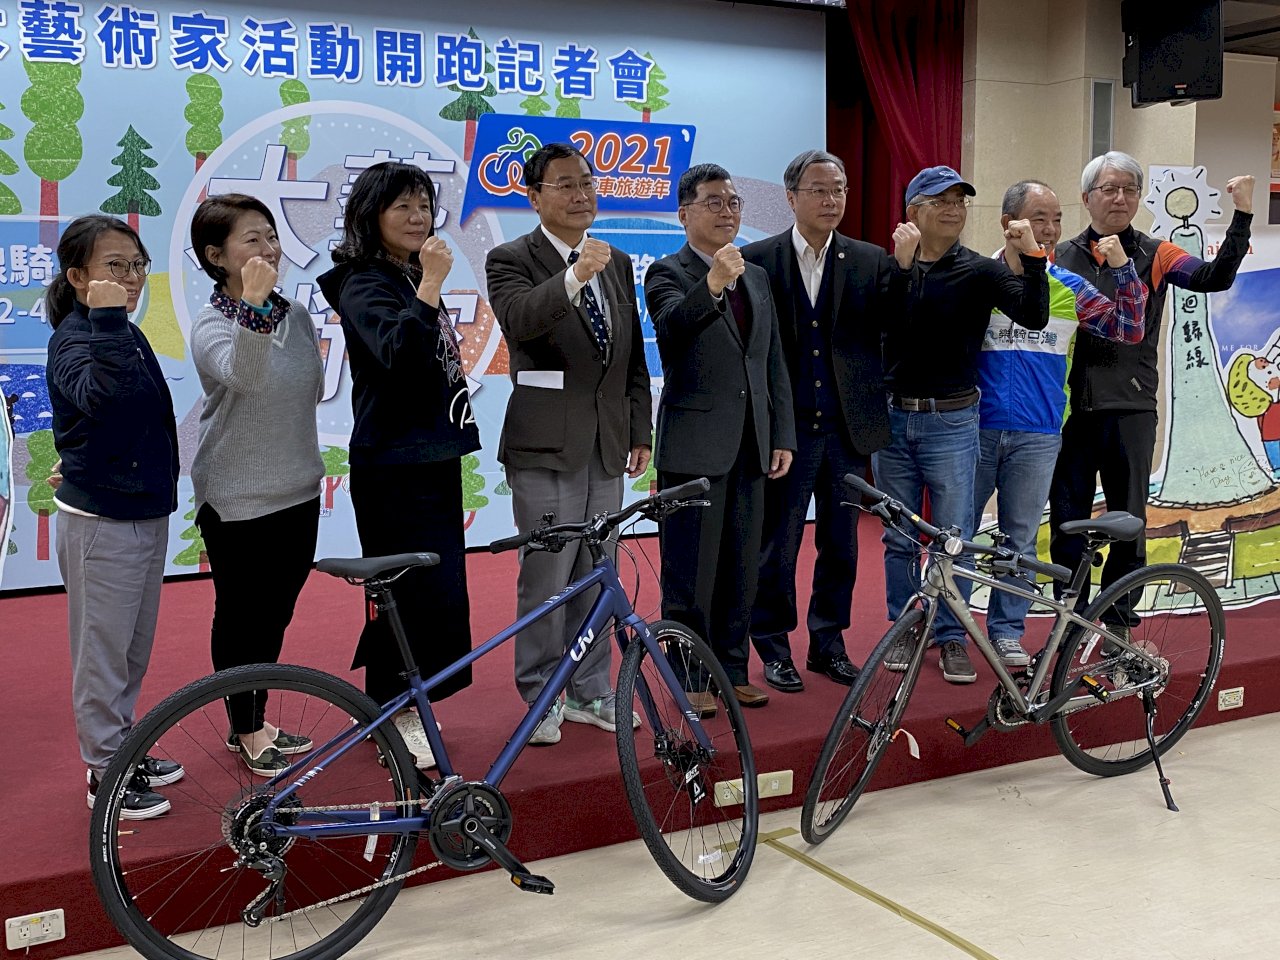 台湾をキャンバスに自転車で絵を サイクリング大芸術家 開幕 ニュース Rti 台湾国際放送